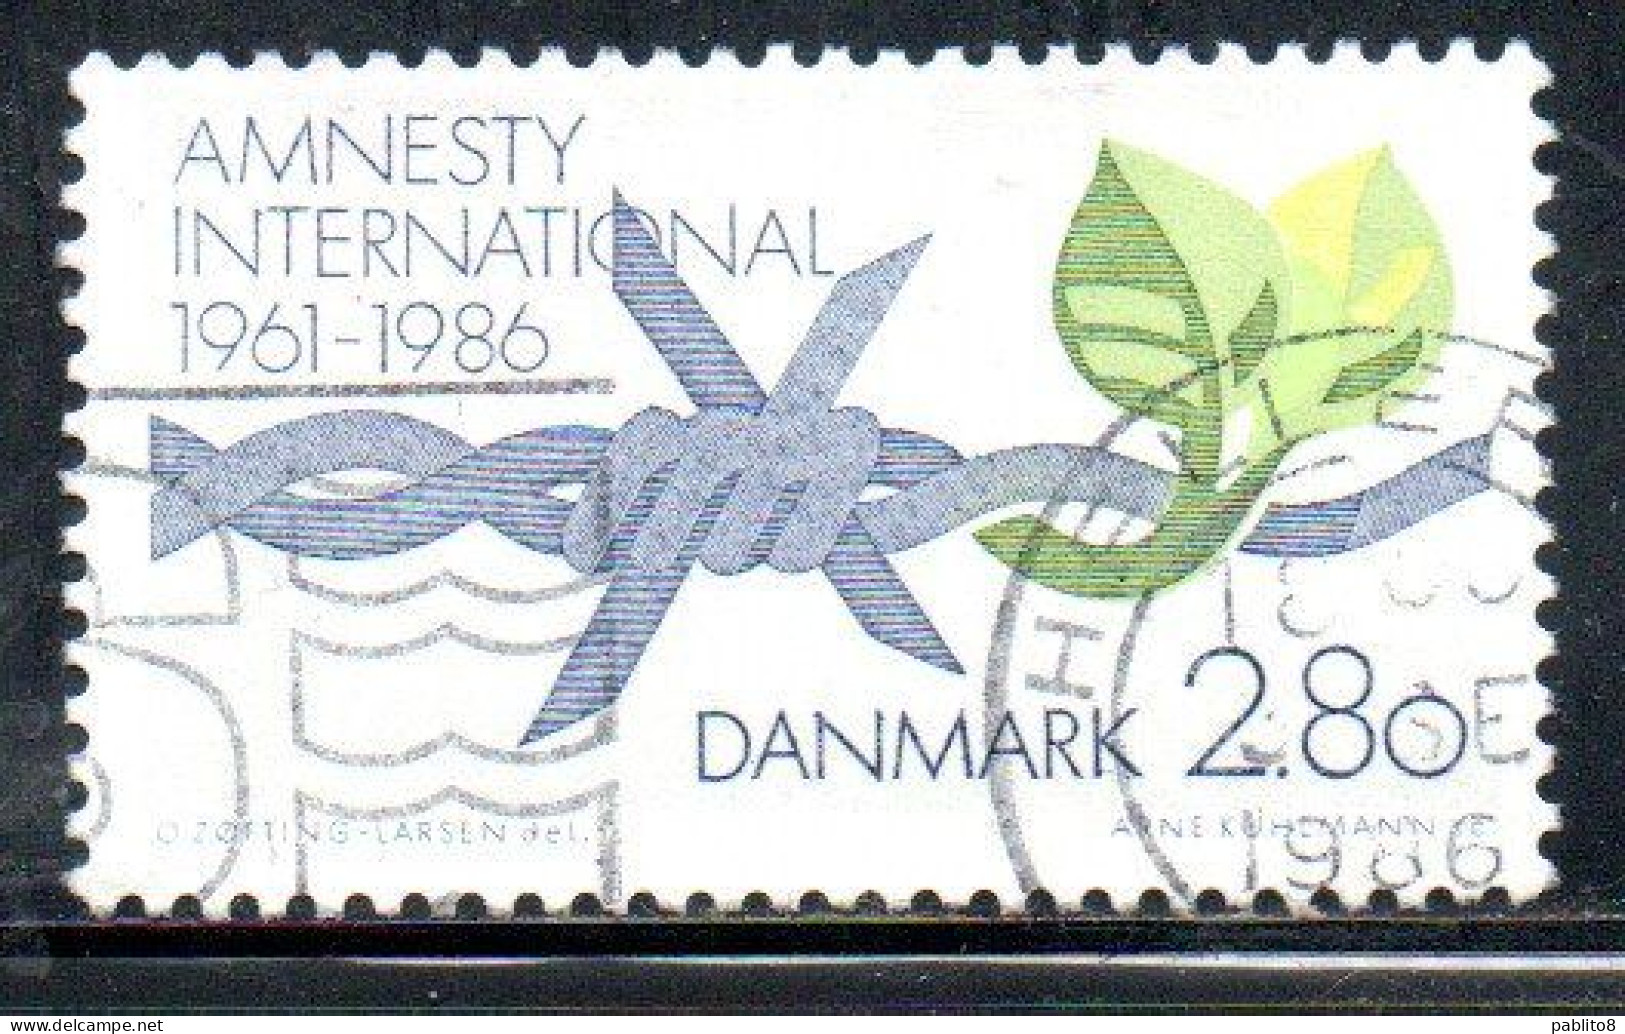 DANEMARK DANMARK DENMARK DANIMARCA 1986 AMNESTY INTERNATIONAL 2.80k USED USATO OBLITERE' - Usati